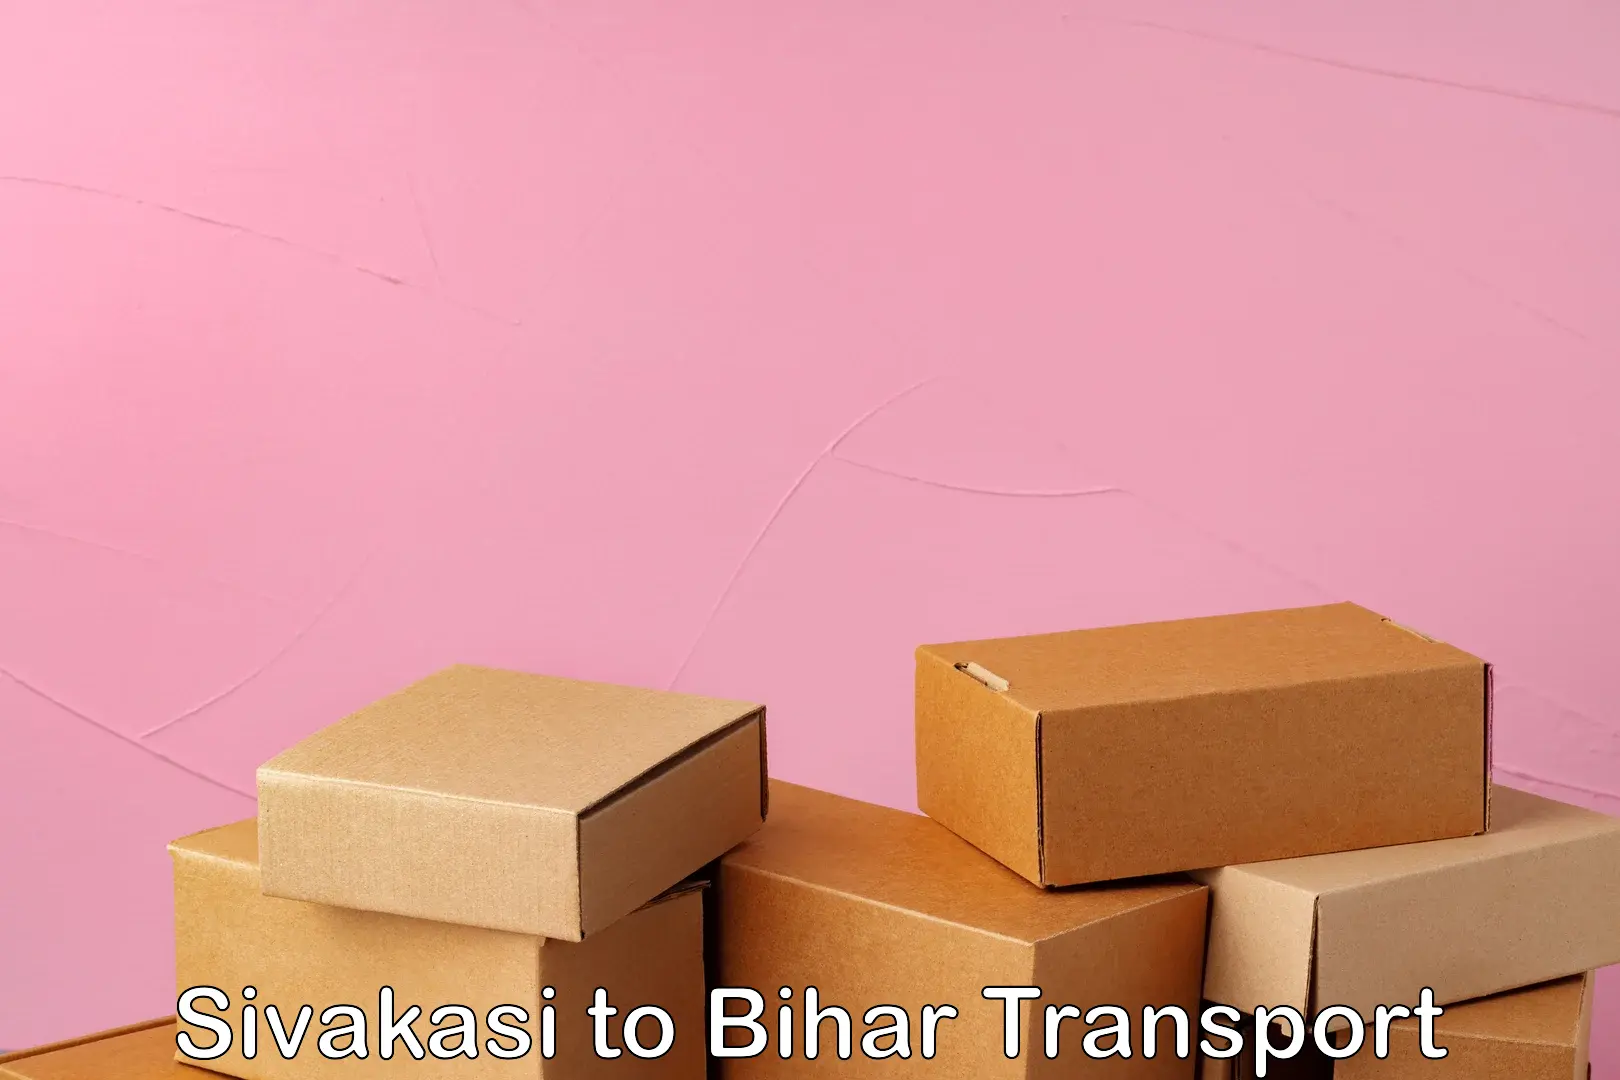 Express transport services Sivakasi to Bihar